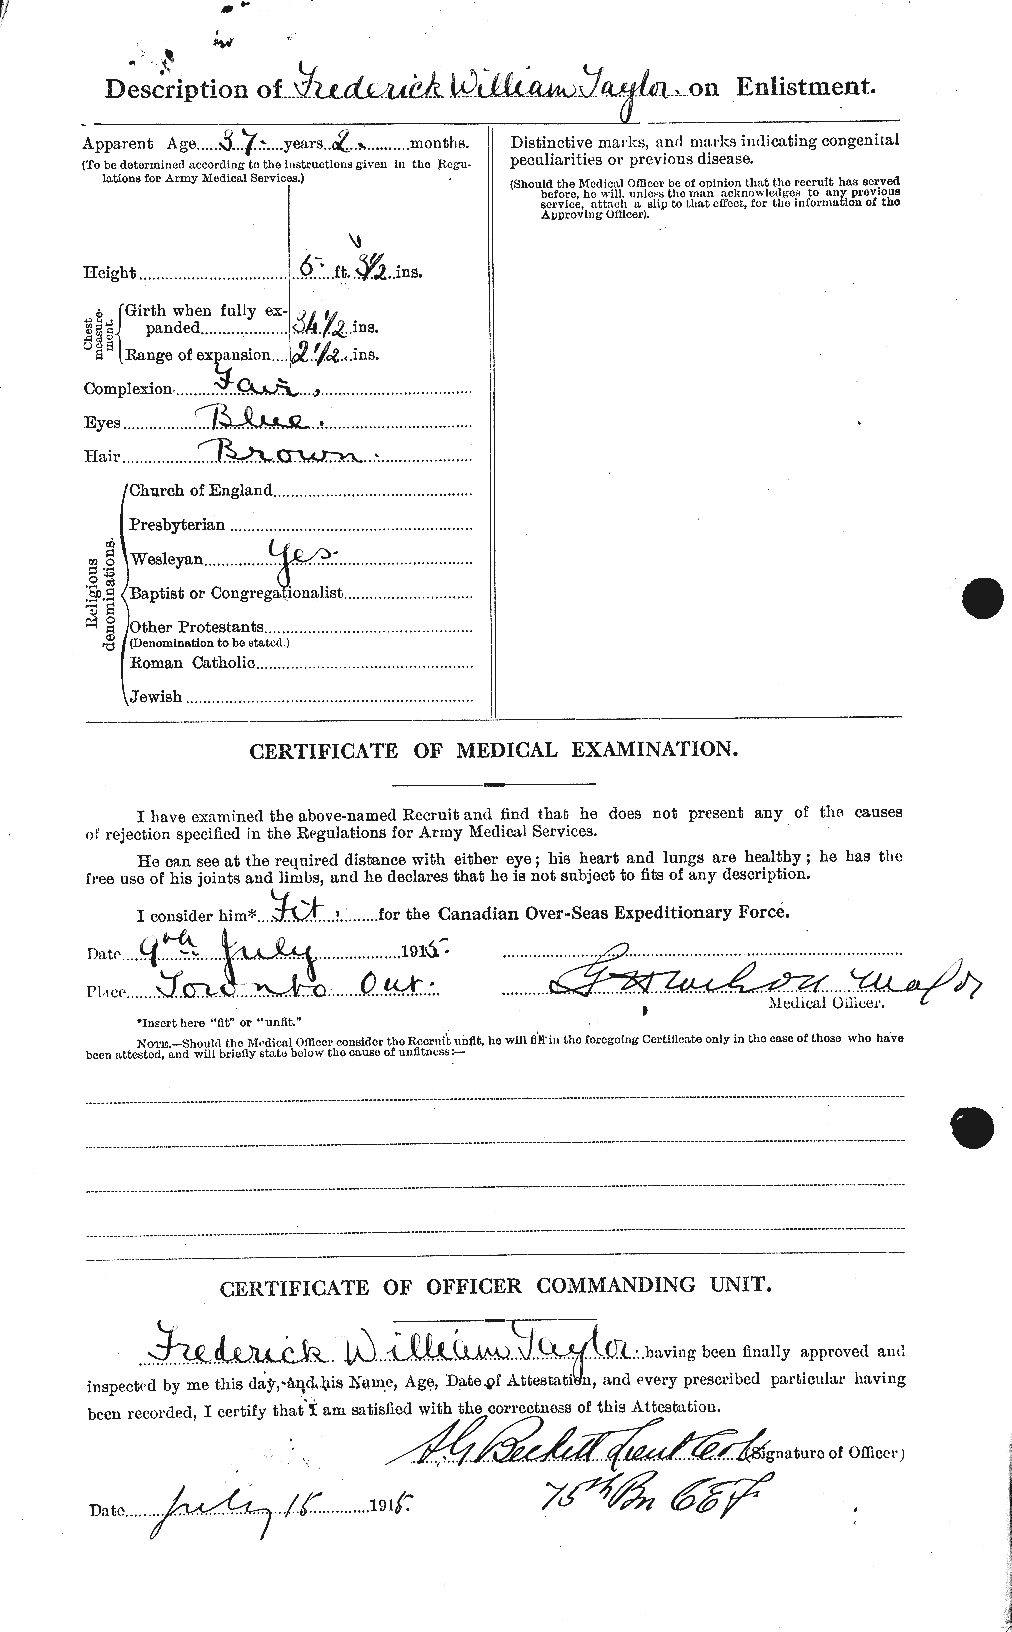 Dossiers du Personnel de la Première Guerre mondiale - CEC 625823b